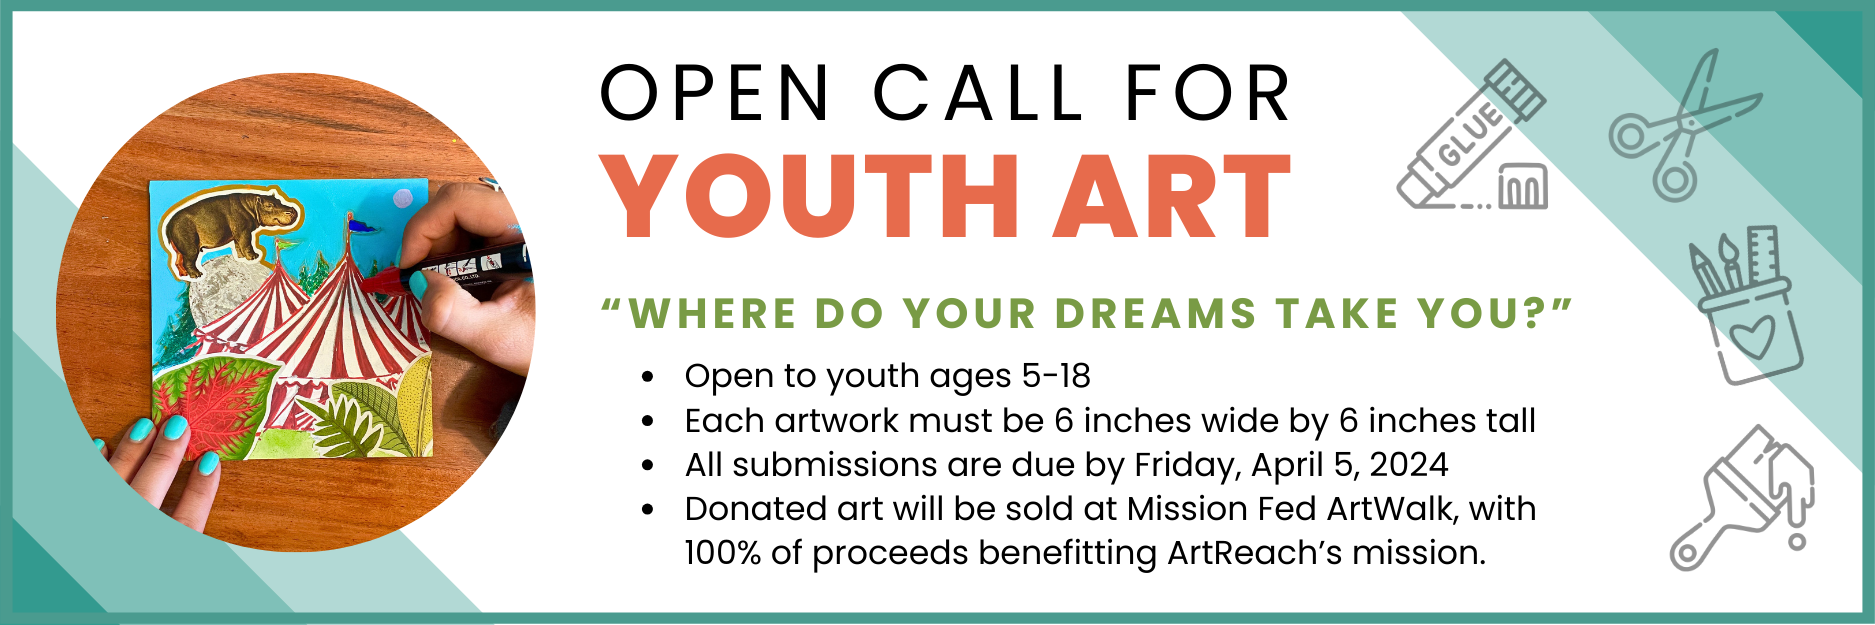 Call for Youth Art // Mission Fed ArtWalk 2024 ArtReach San Diego